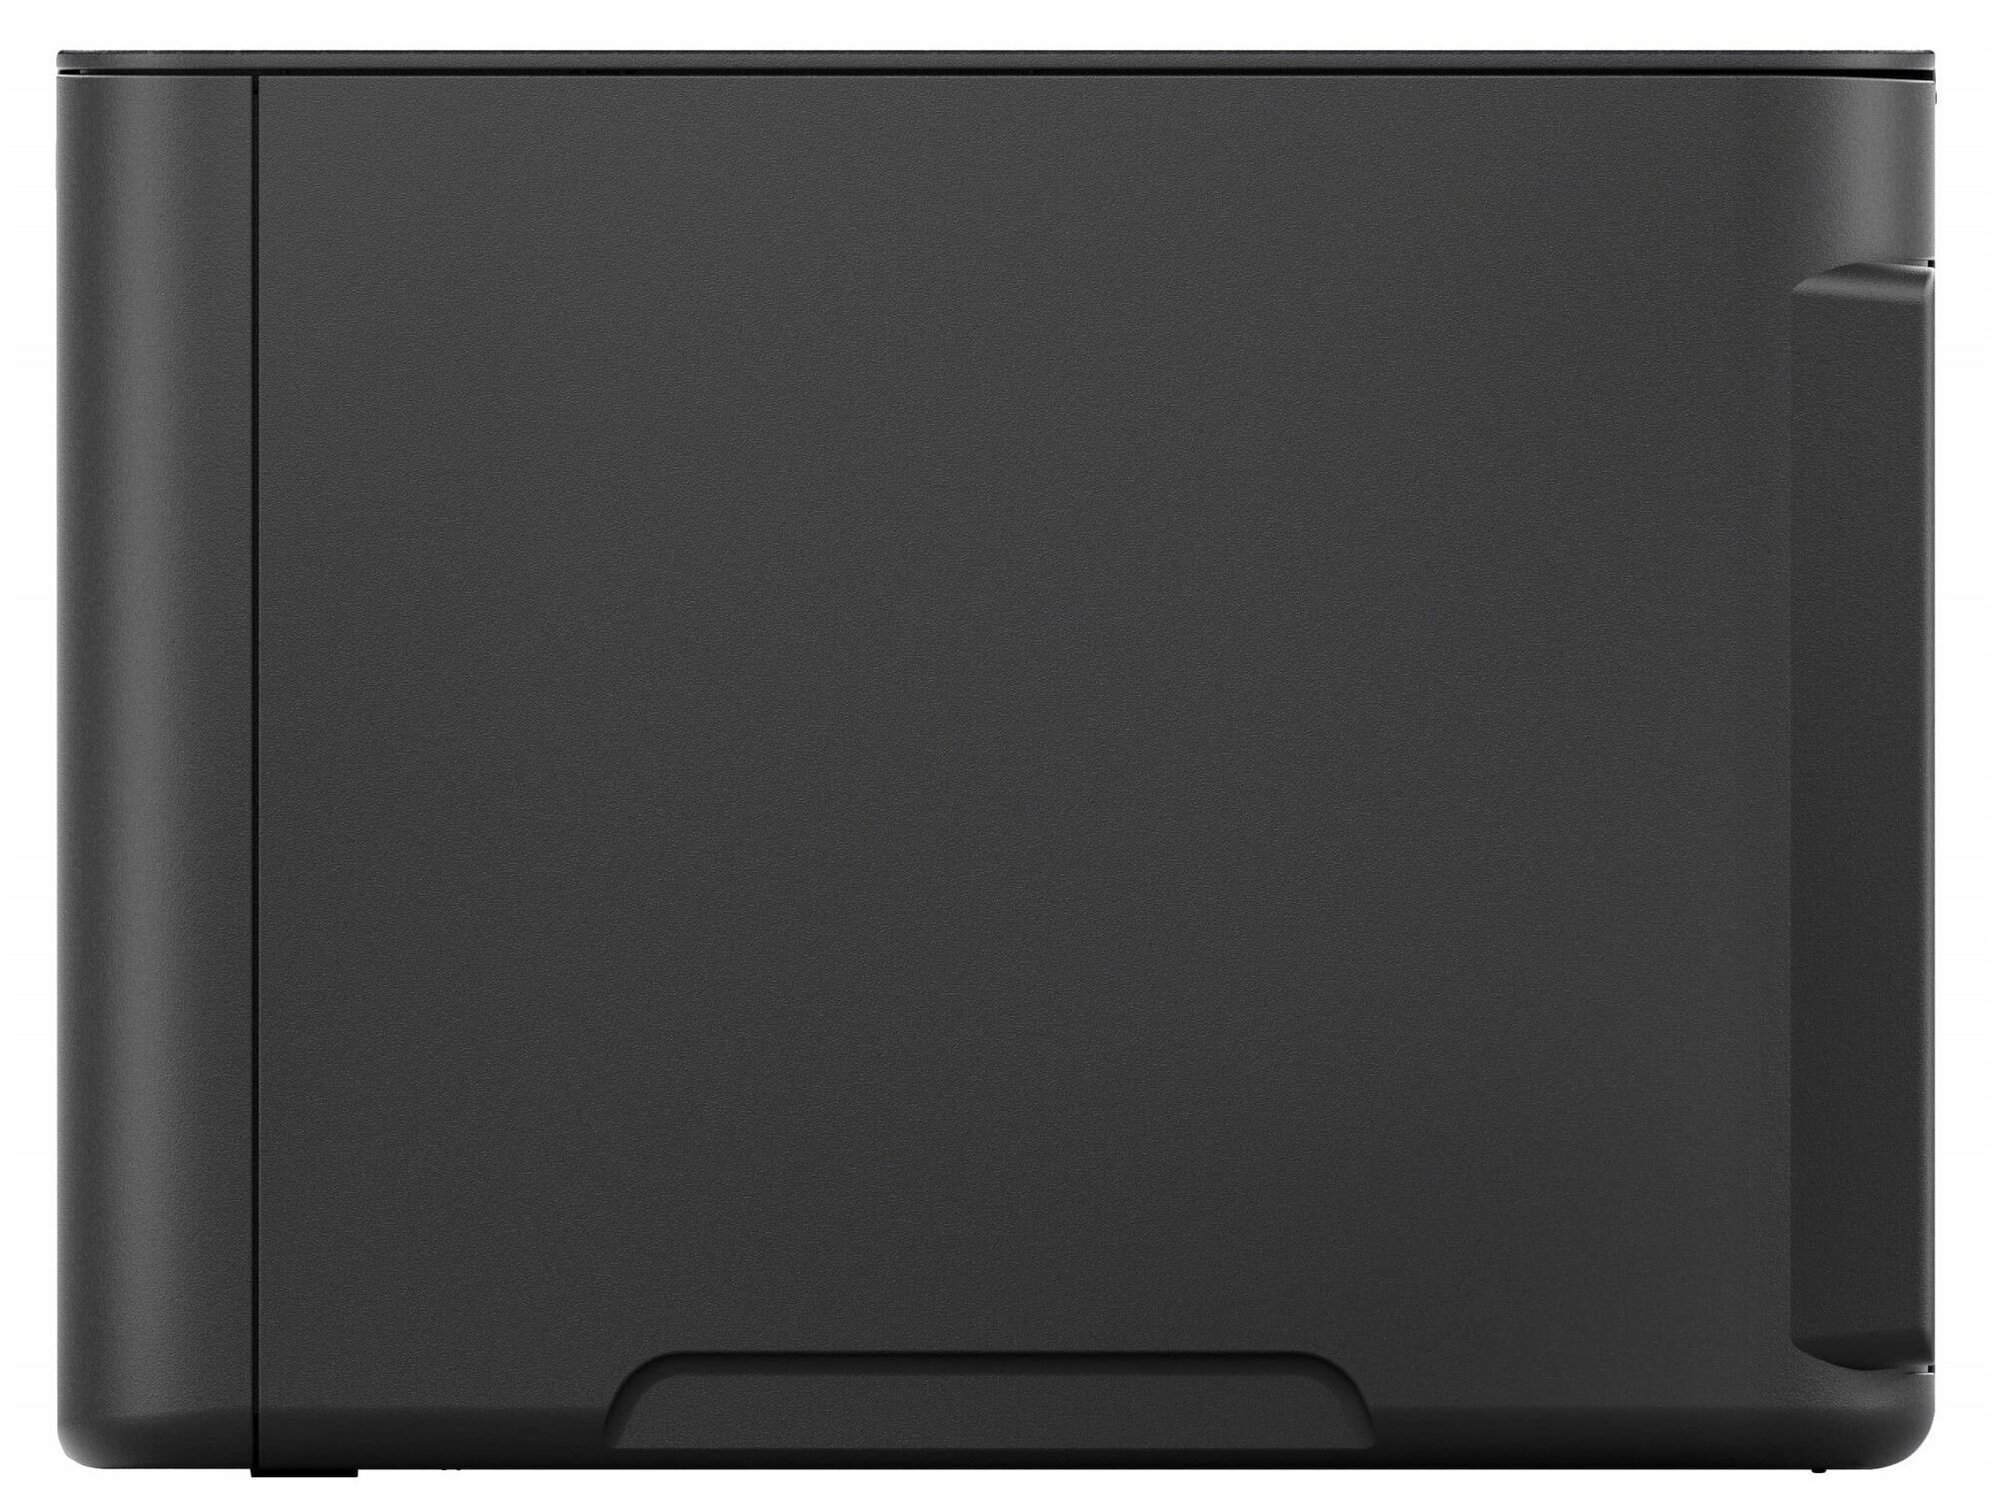 Kyocera PA2001w лазерный принтер ч/б, A4, черный, 20 стр/мин, 600 x 600 dpi, Wi-Fi, USB, 32Мб - фото №7